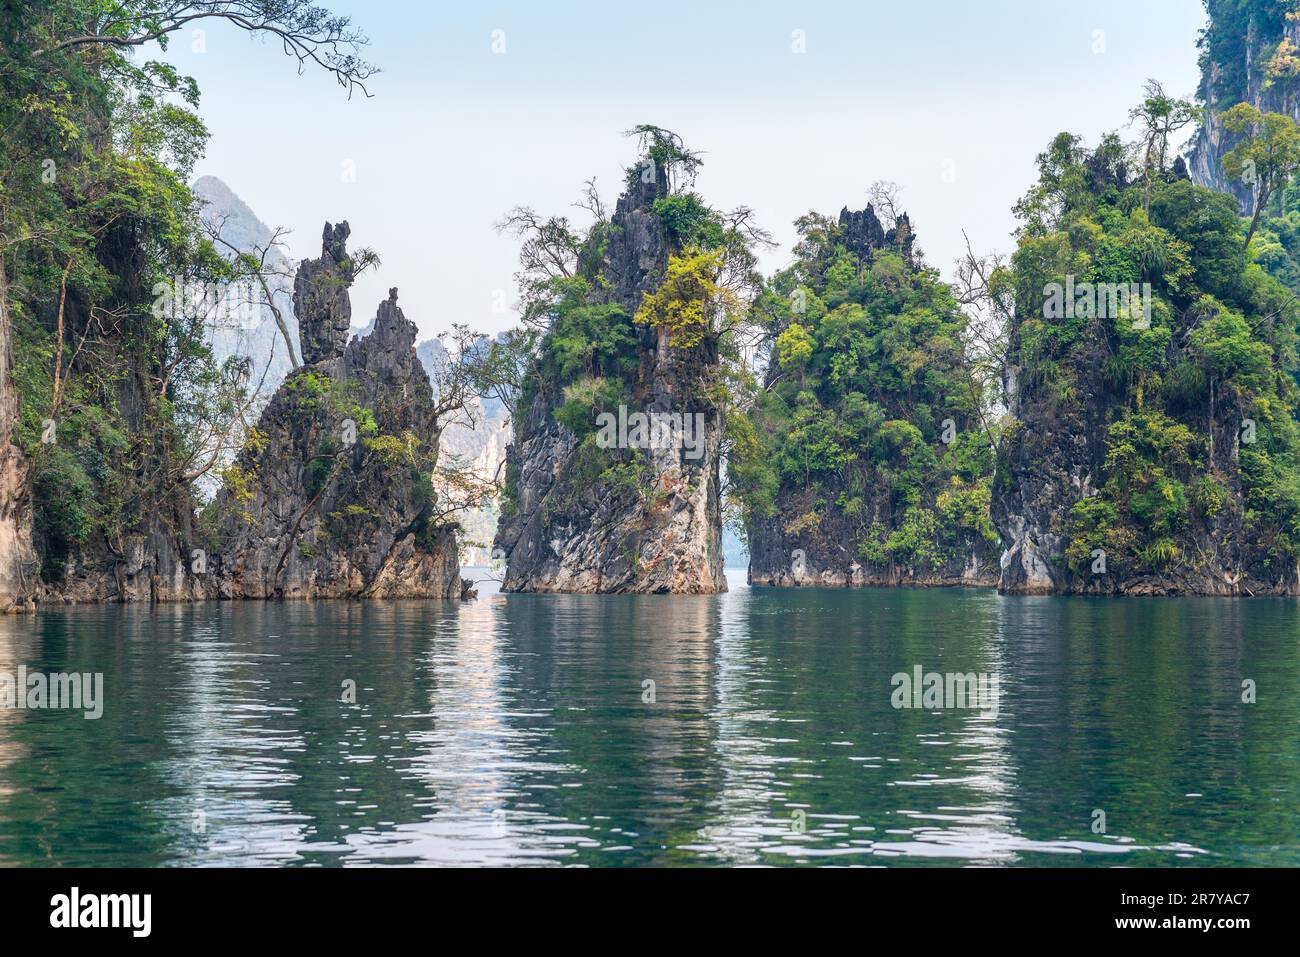 Formazioni carsiche significative nel parco nazionale Khao Sok sorgono sopra il lago Cheow LAN. Rocce calcaree, giungla e carsico determinano l'immagine di Foto Stock